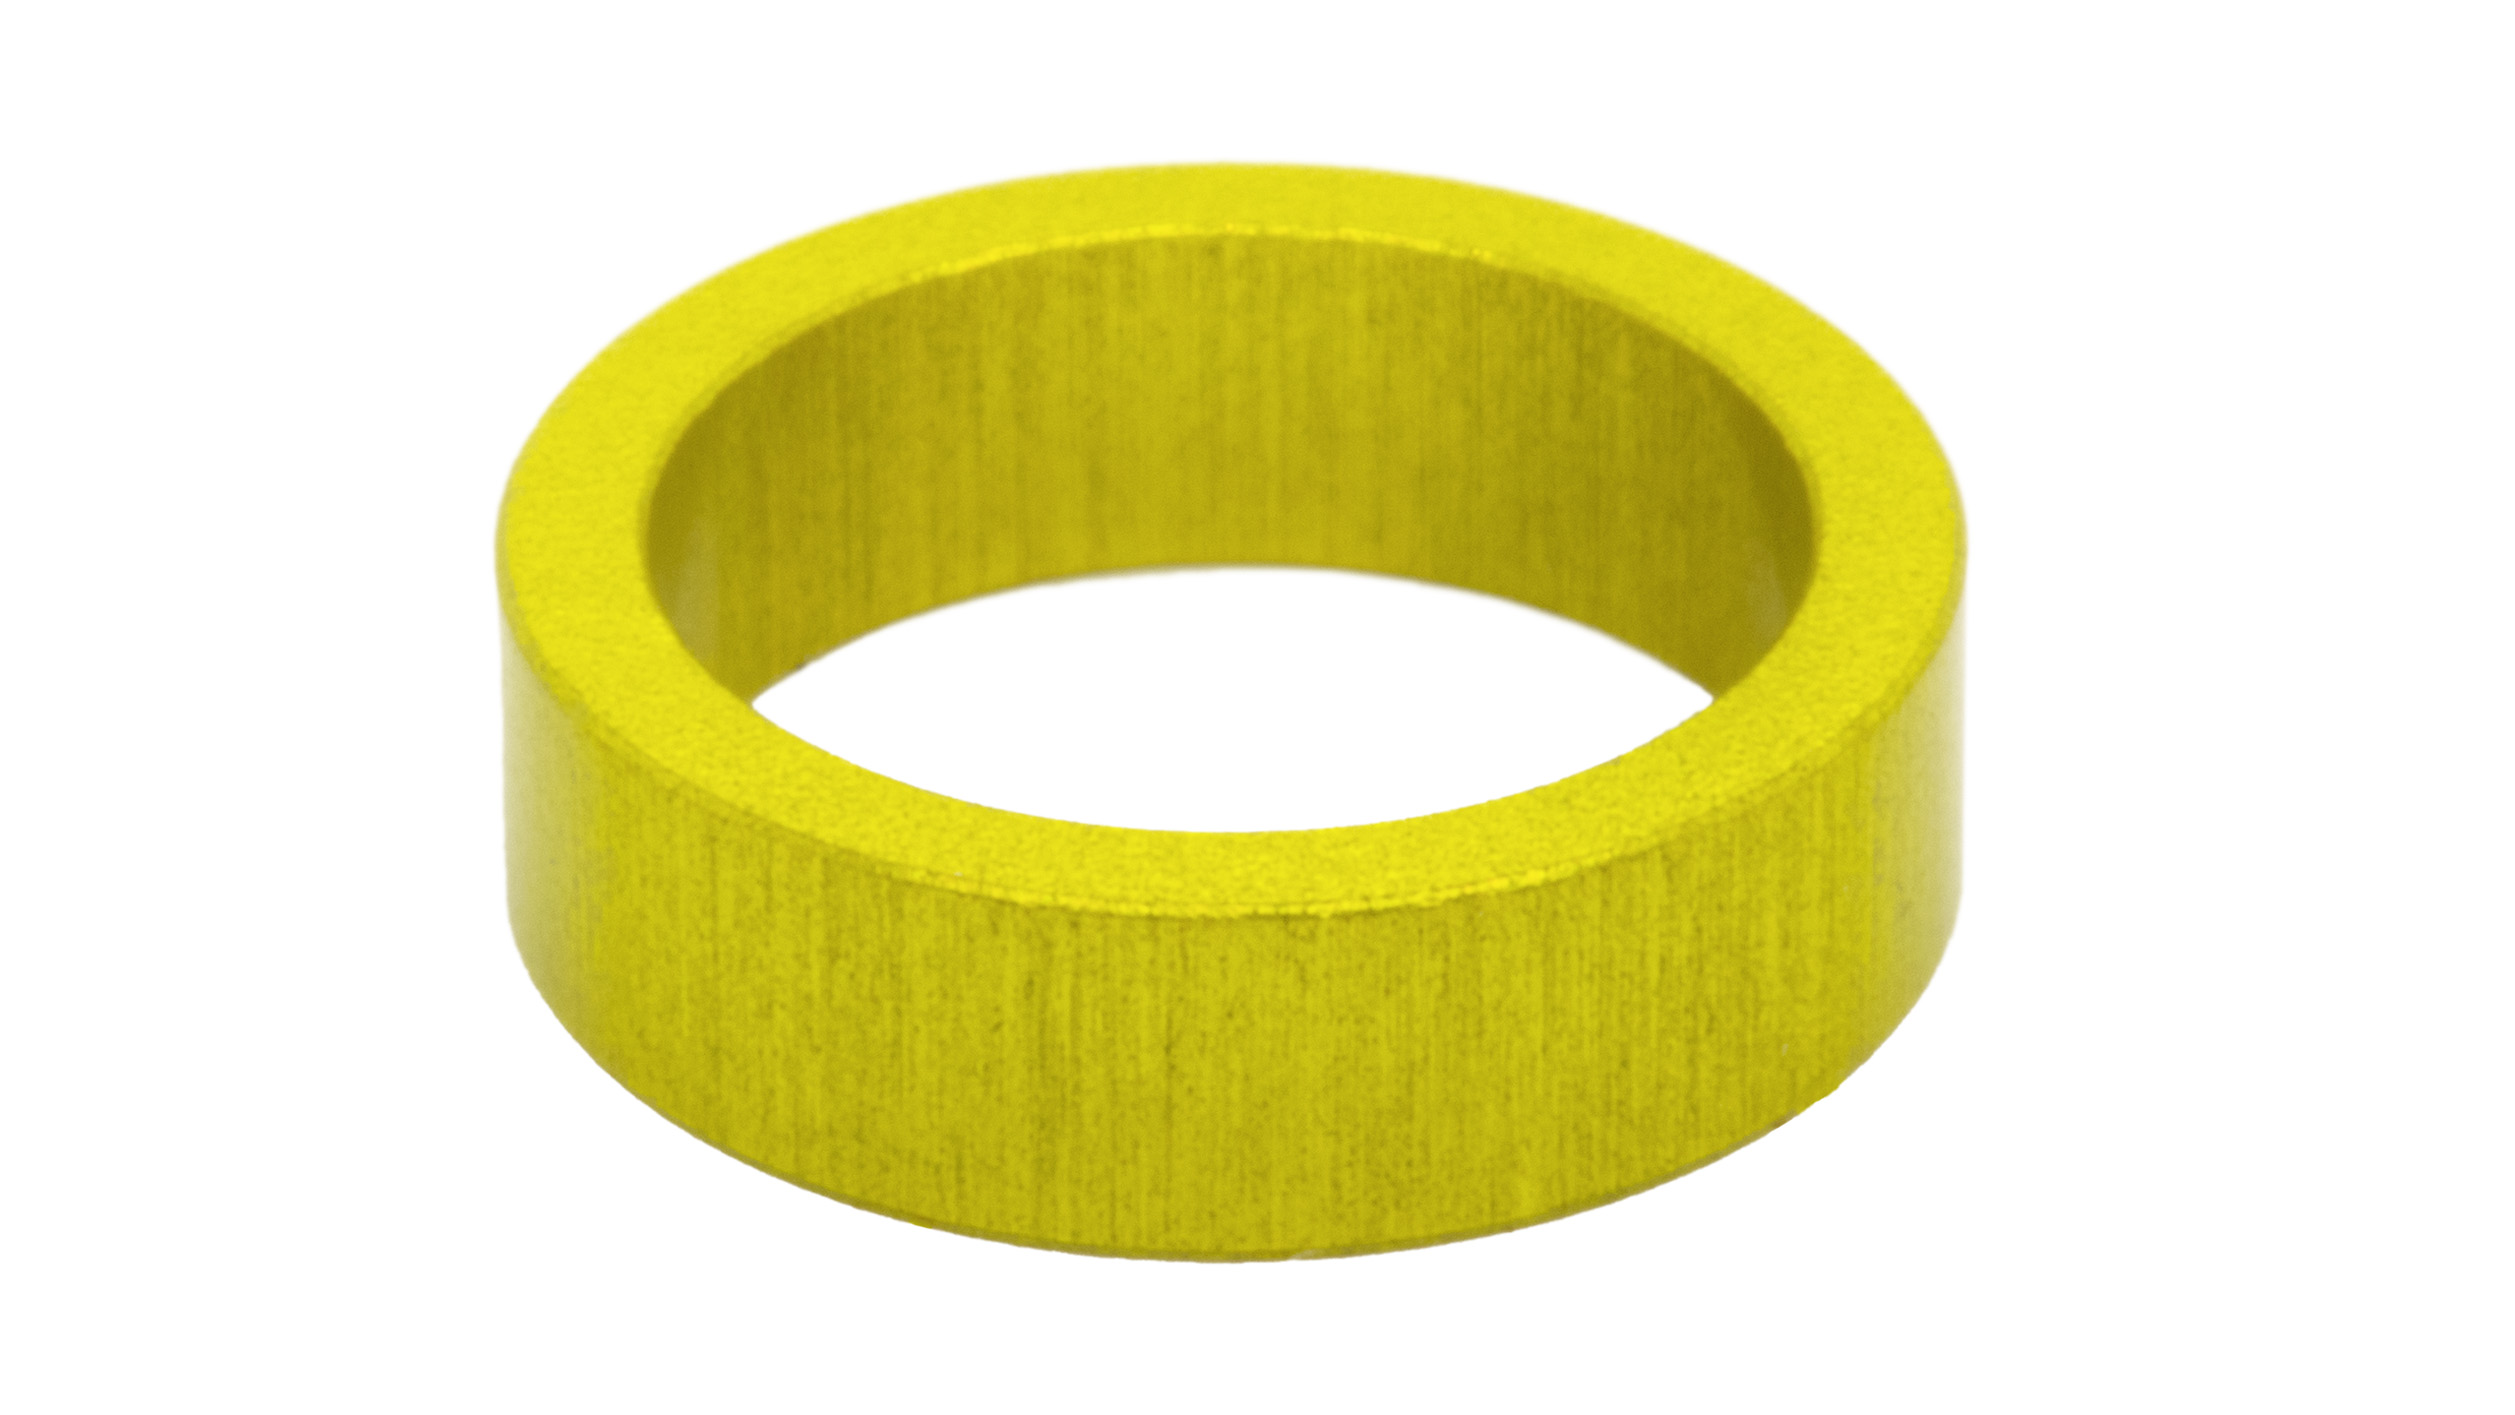 Identifikationsring, gelb, für Petitpierre TR, Klinge 0,8 mm